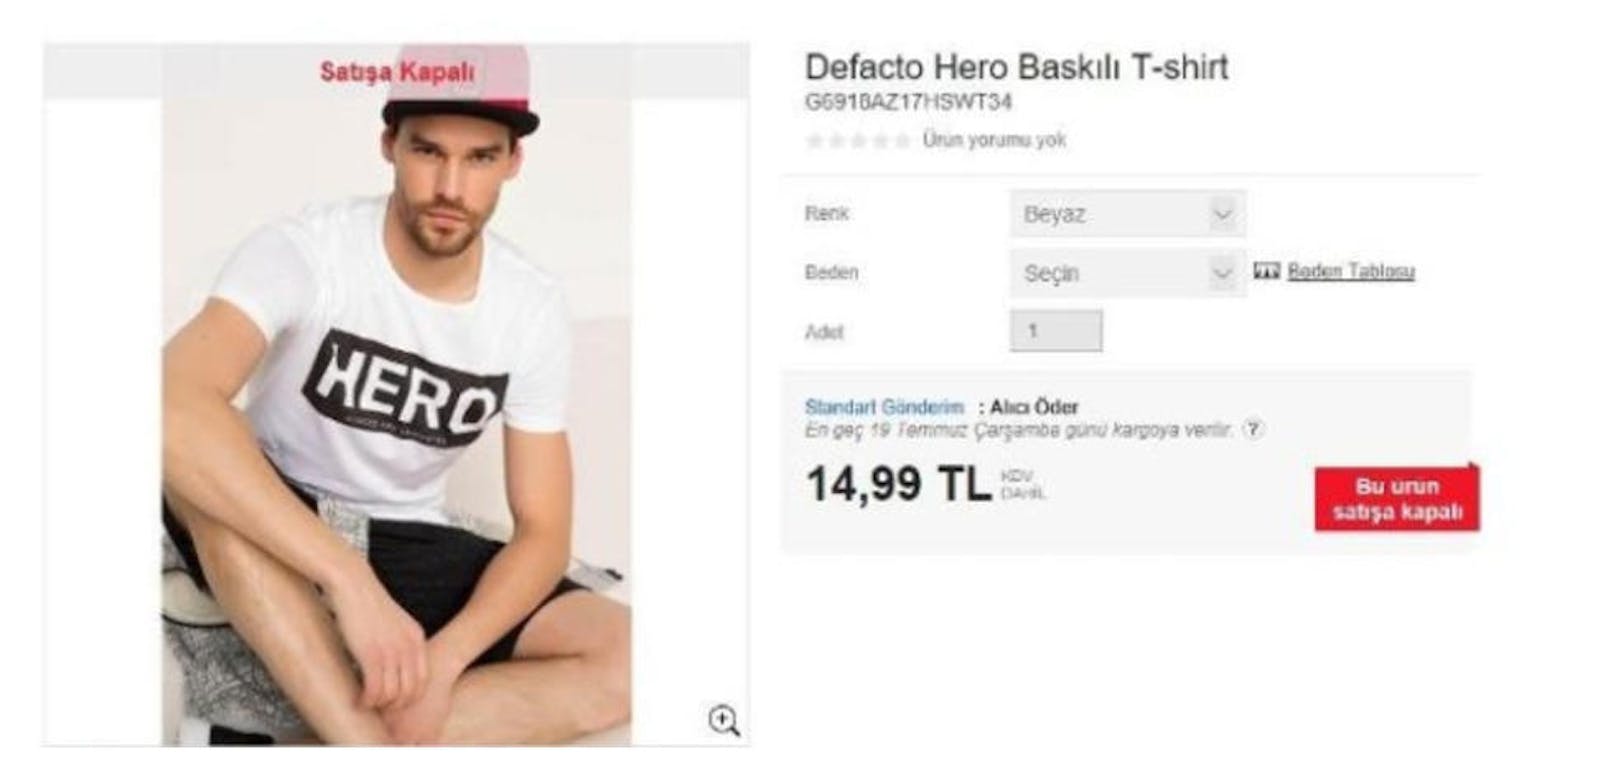 Das T-Shirt verkauft sich auf der türkischen Onlineplattform Defacto für 14,99 türkische Lira, umgerechnet 3,60 Euro.